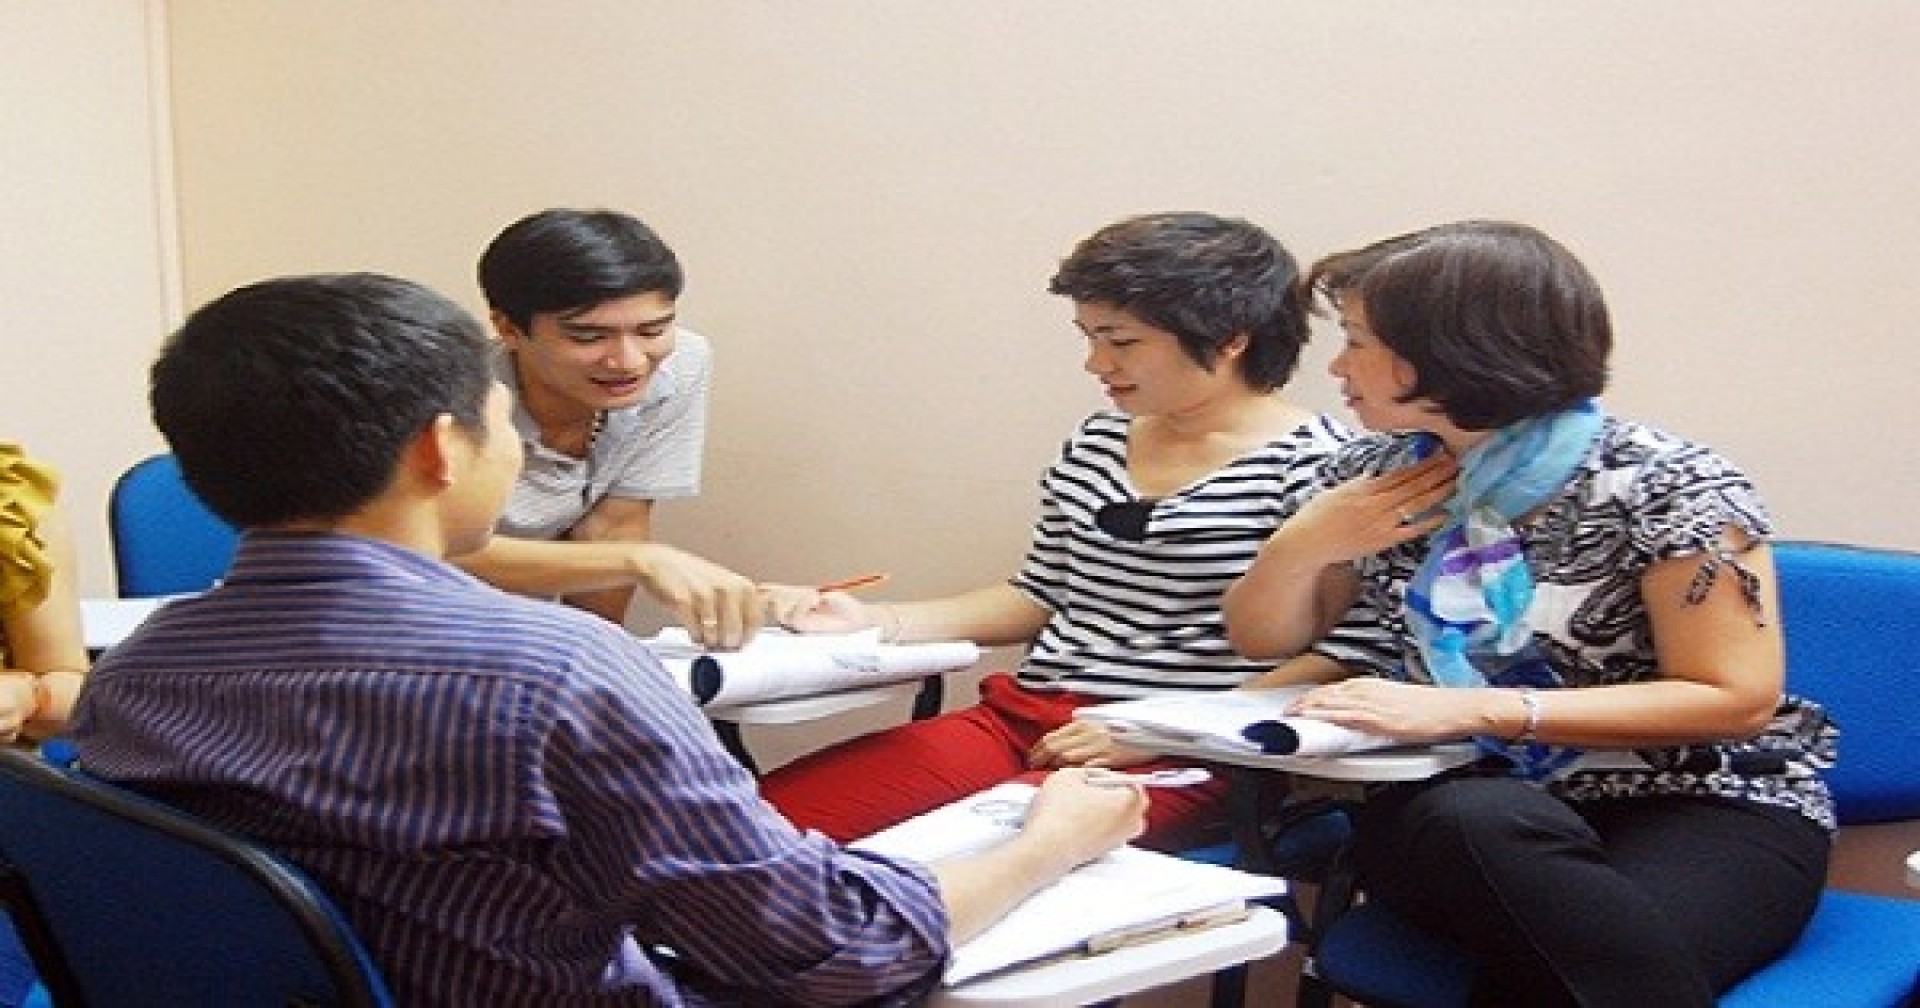 Ngoại ngữ ITC – Địa điểm học tiếng Anh cho người lớn ở Hà Nội